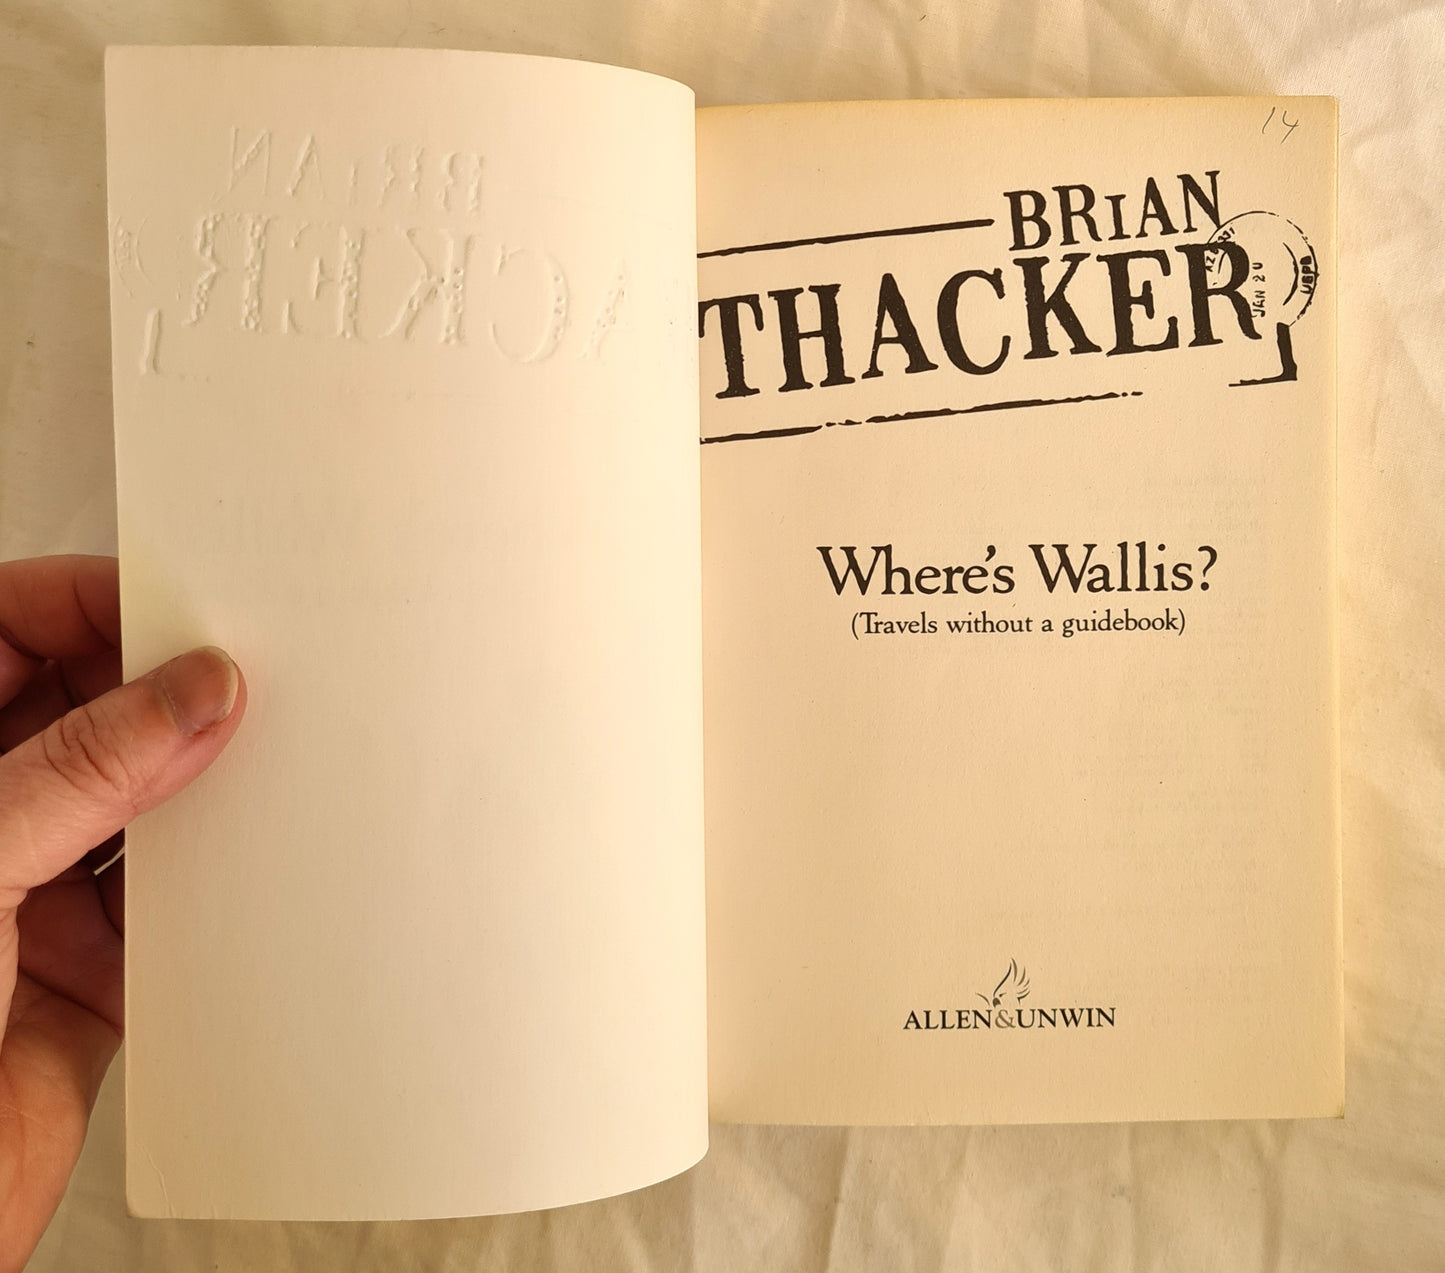 Where’s Wallis? by Brian Thacker